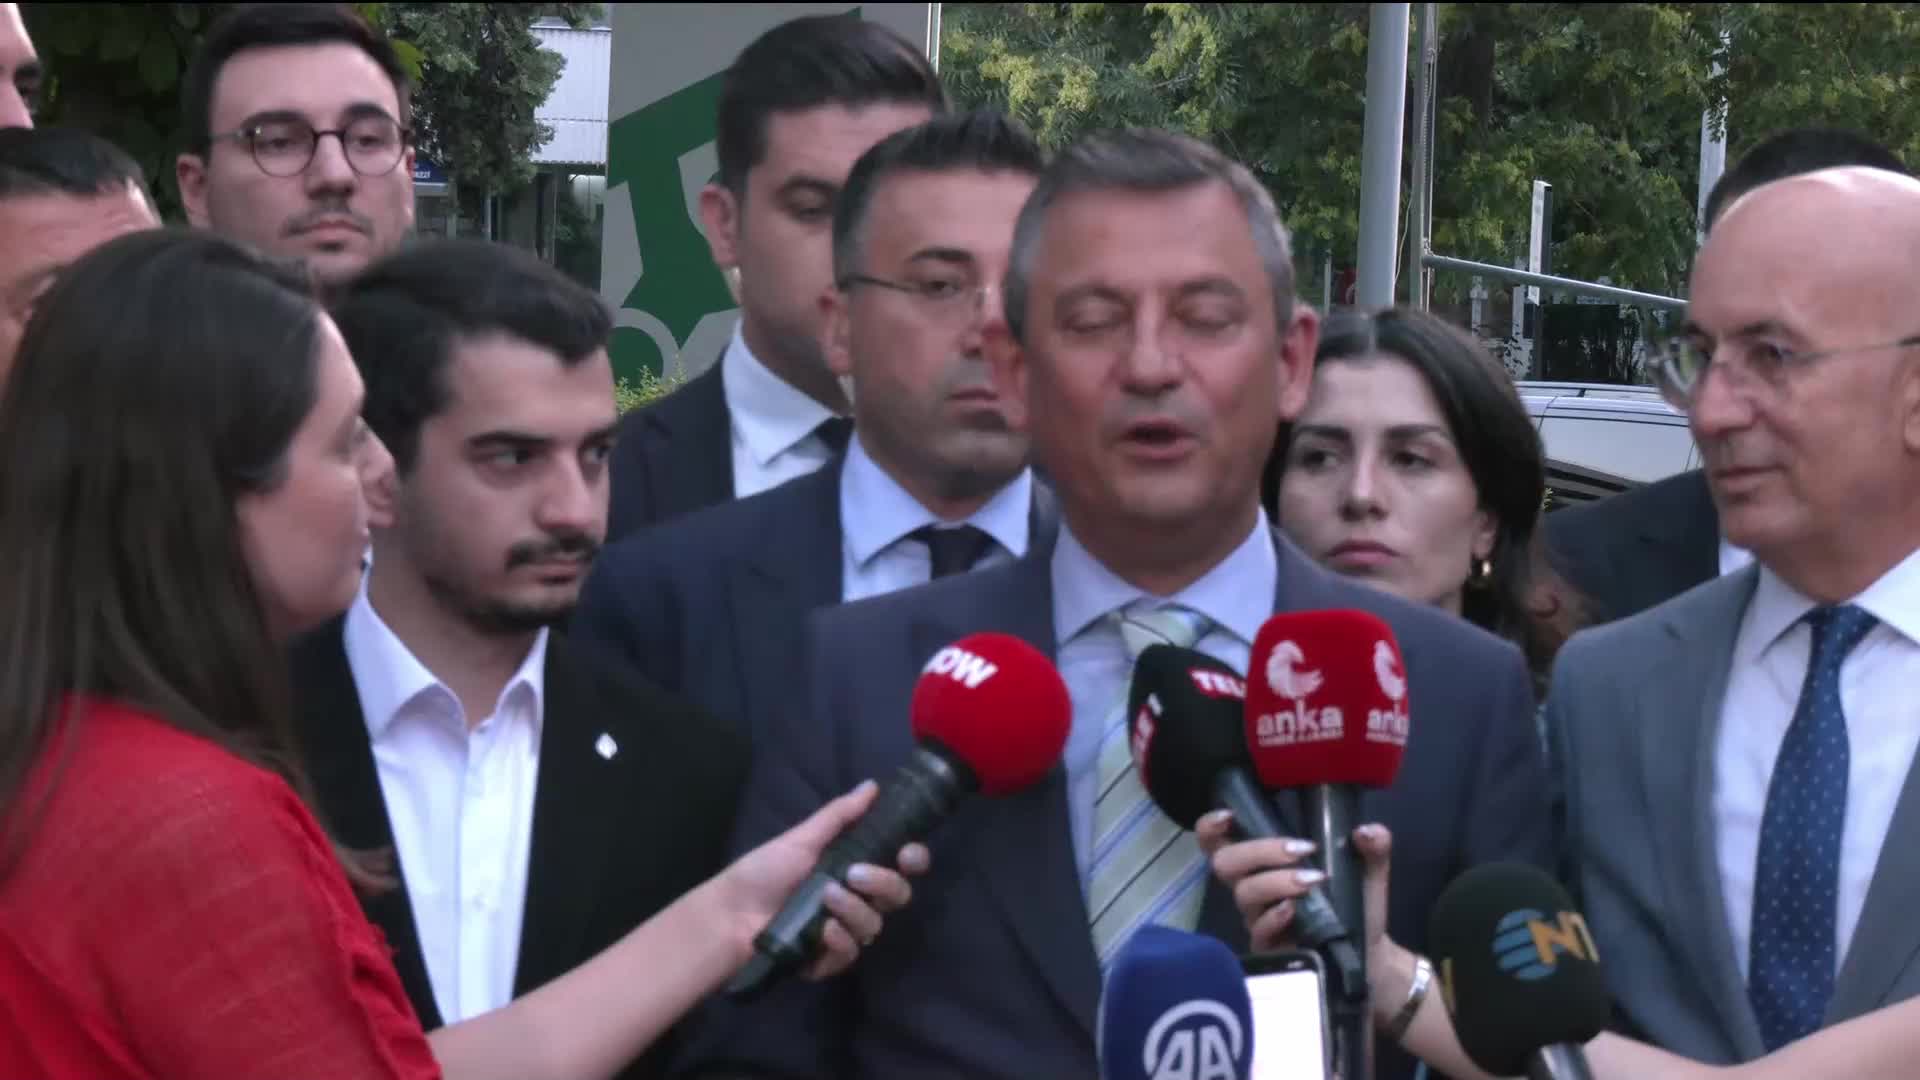 Özel, Kılıçdaroğlu-Yavaş buluşmasını değerlendirdi: "Parti içi normalleşmeye dair kıymetli, önemli ve desteklediğim adımlar"